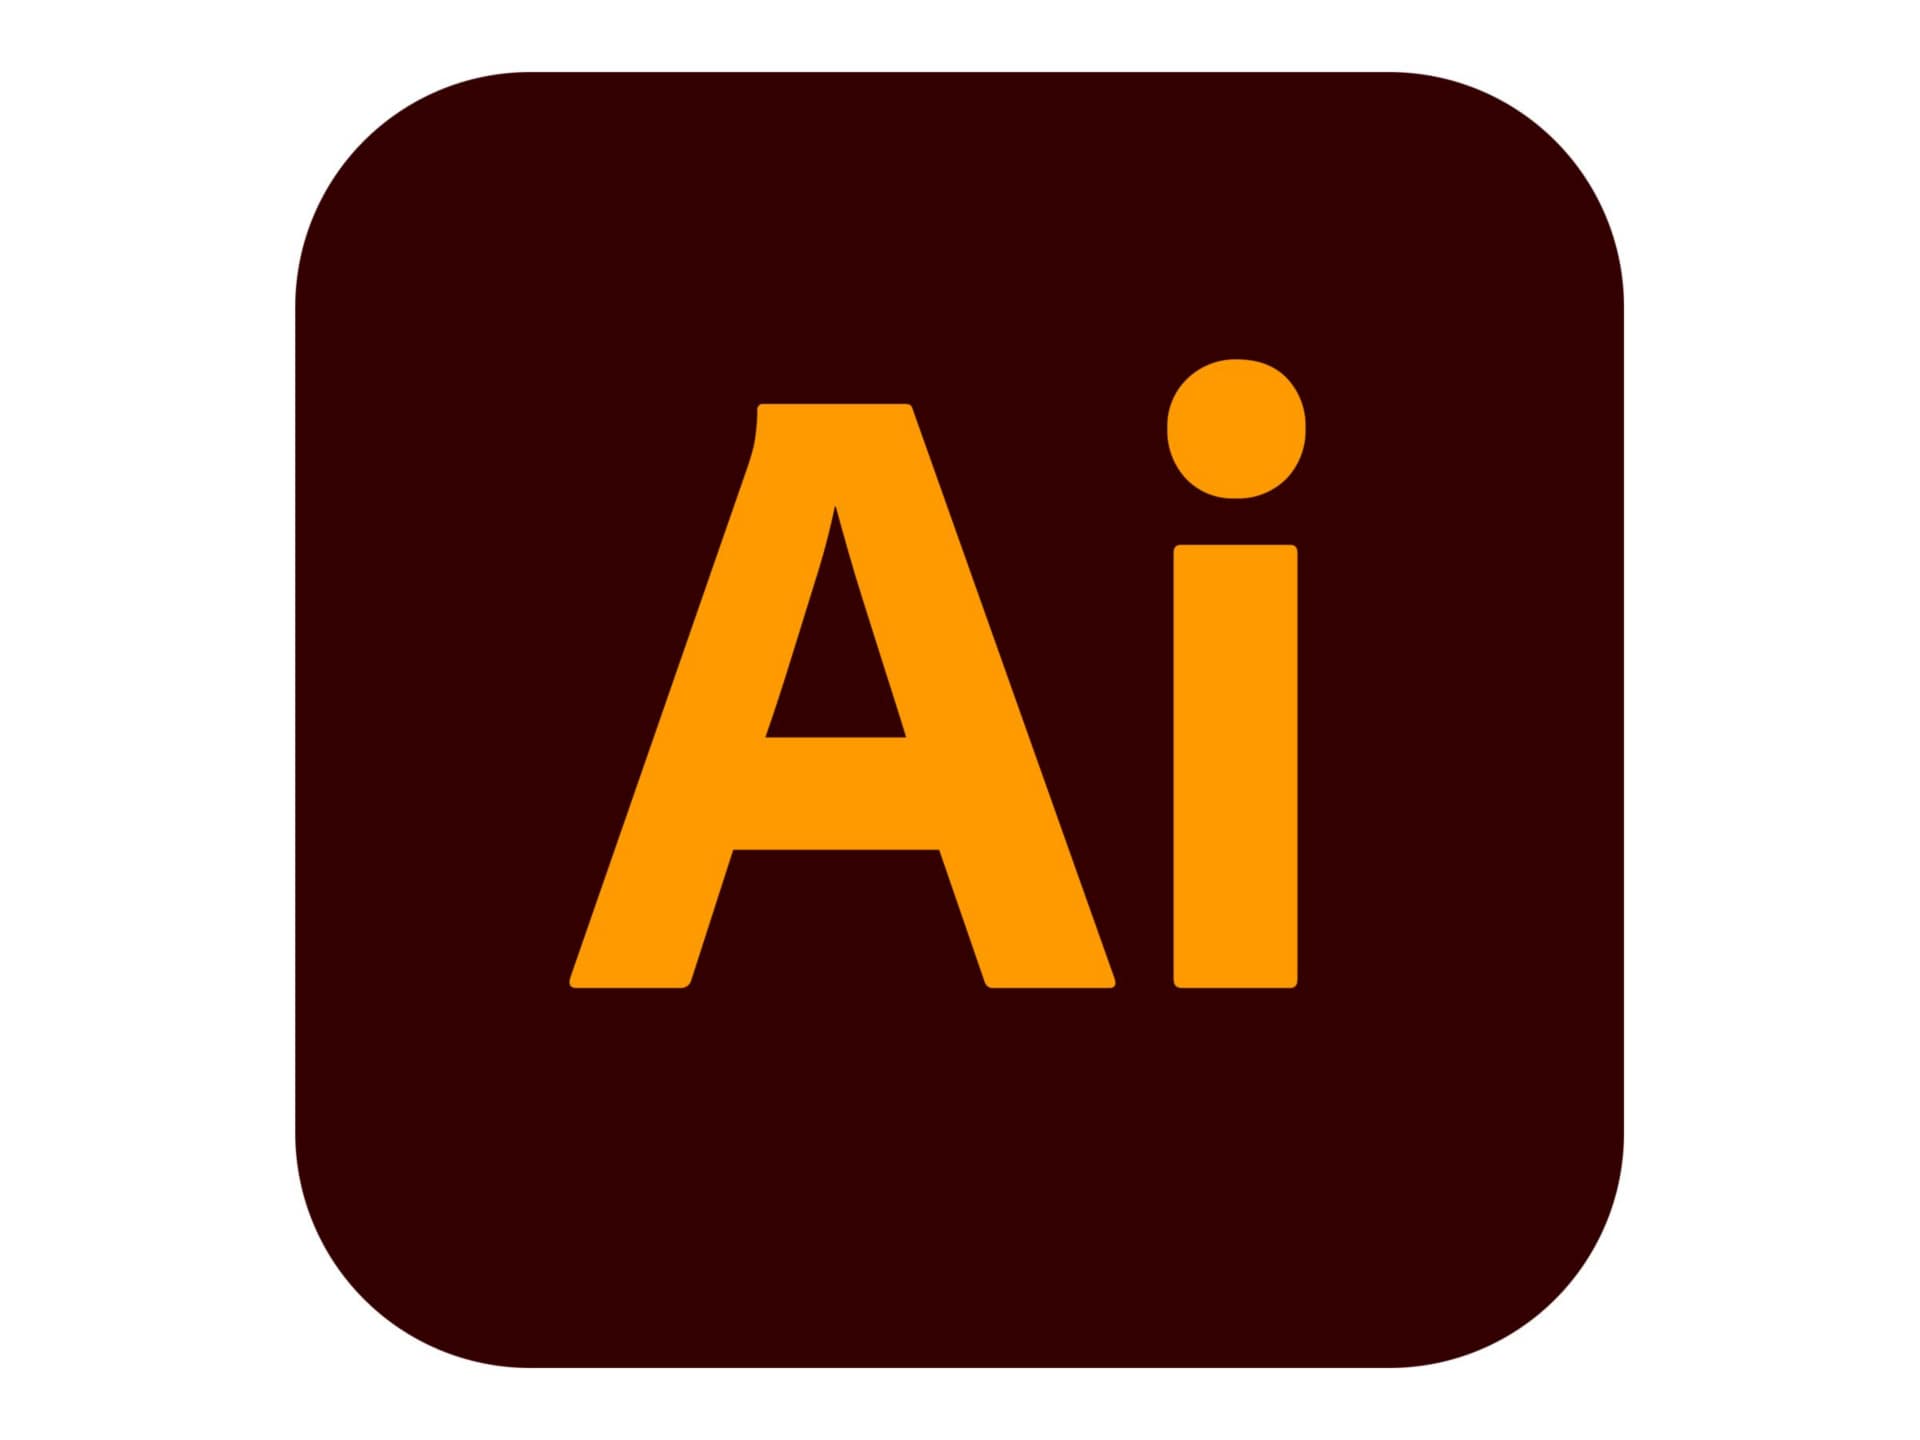 Adobe Illustrator CC for Enterprise - Subscription New (5 months) - 1 named user